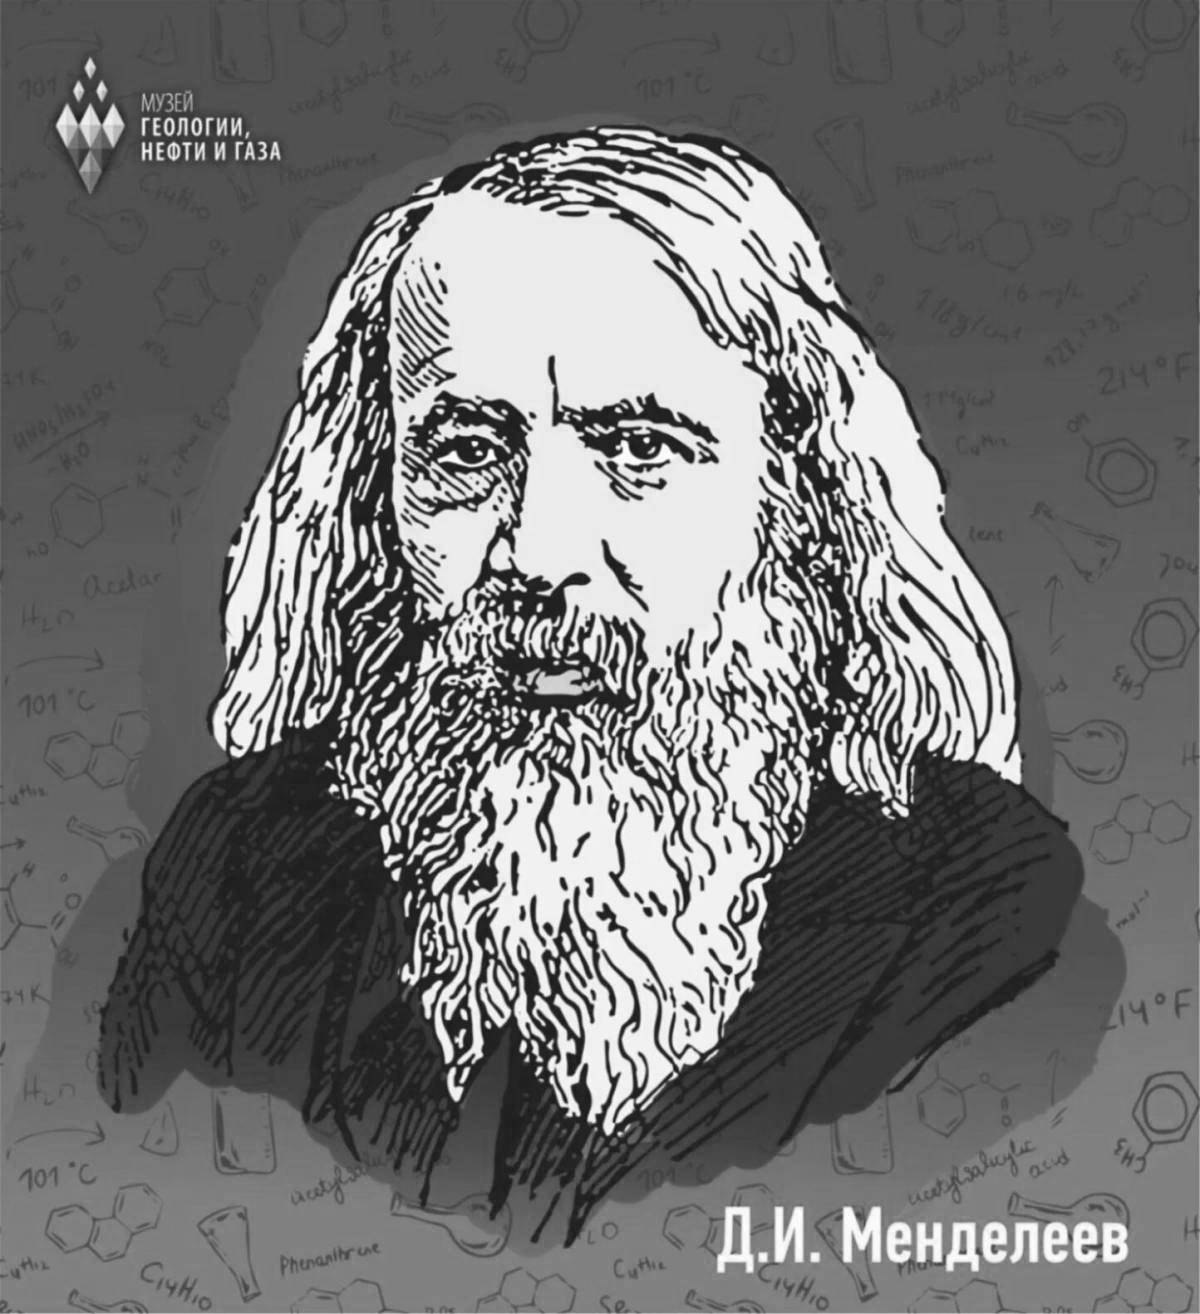 Merry Mendeleev coloring